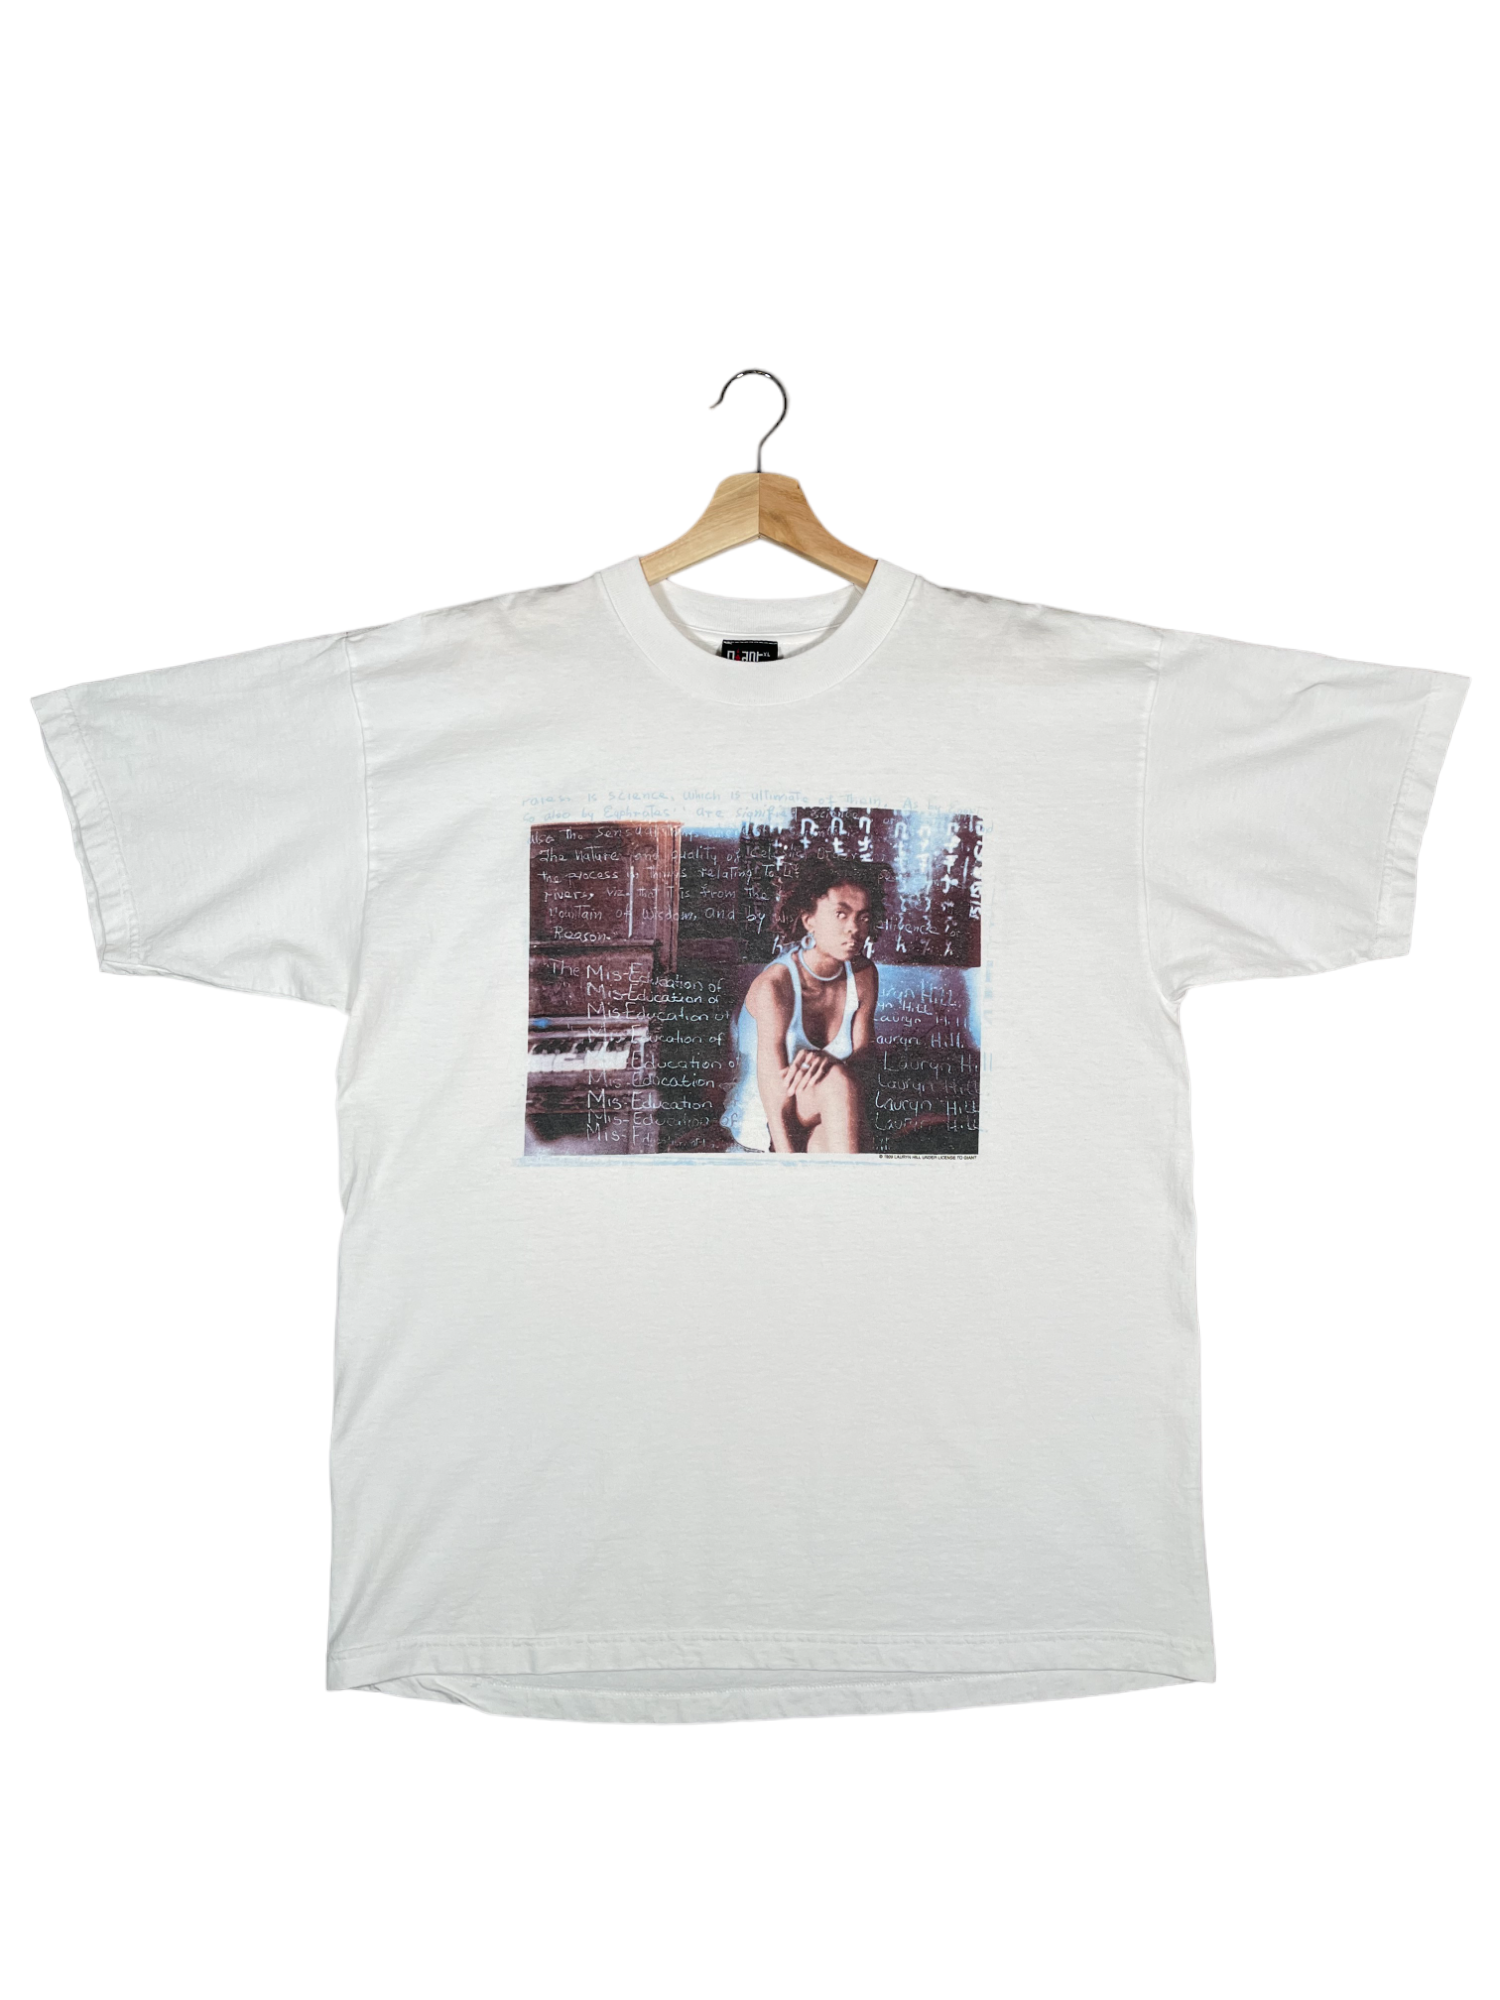 Vintage 1999 Lauryn Hill Miseducation World Tour T-Shirt